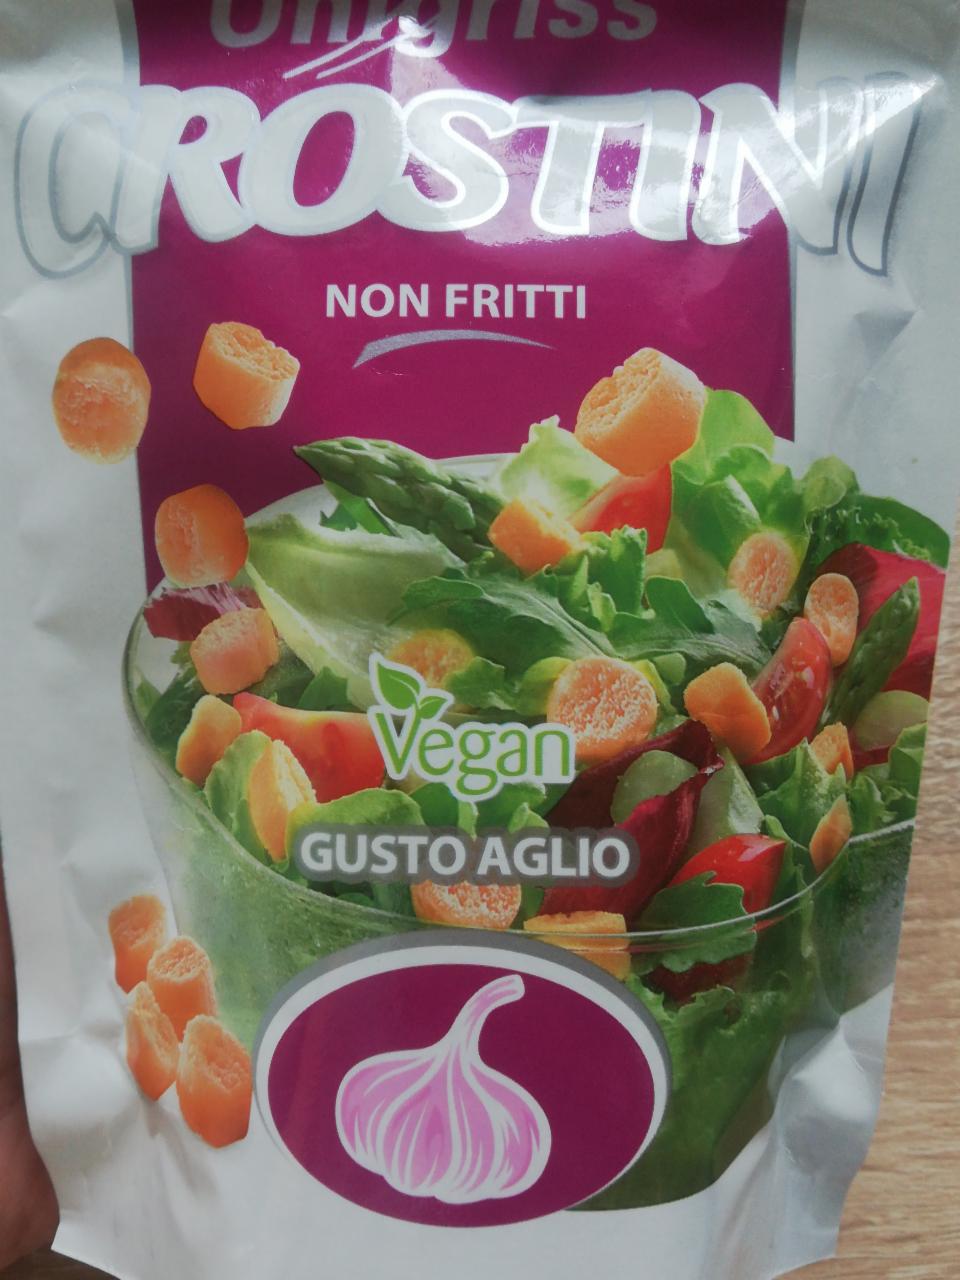 Zdjęcia - Crostini non fritti vegan gusto aglio